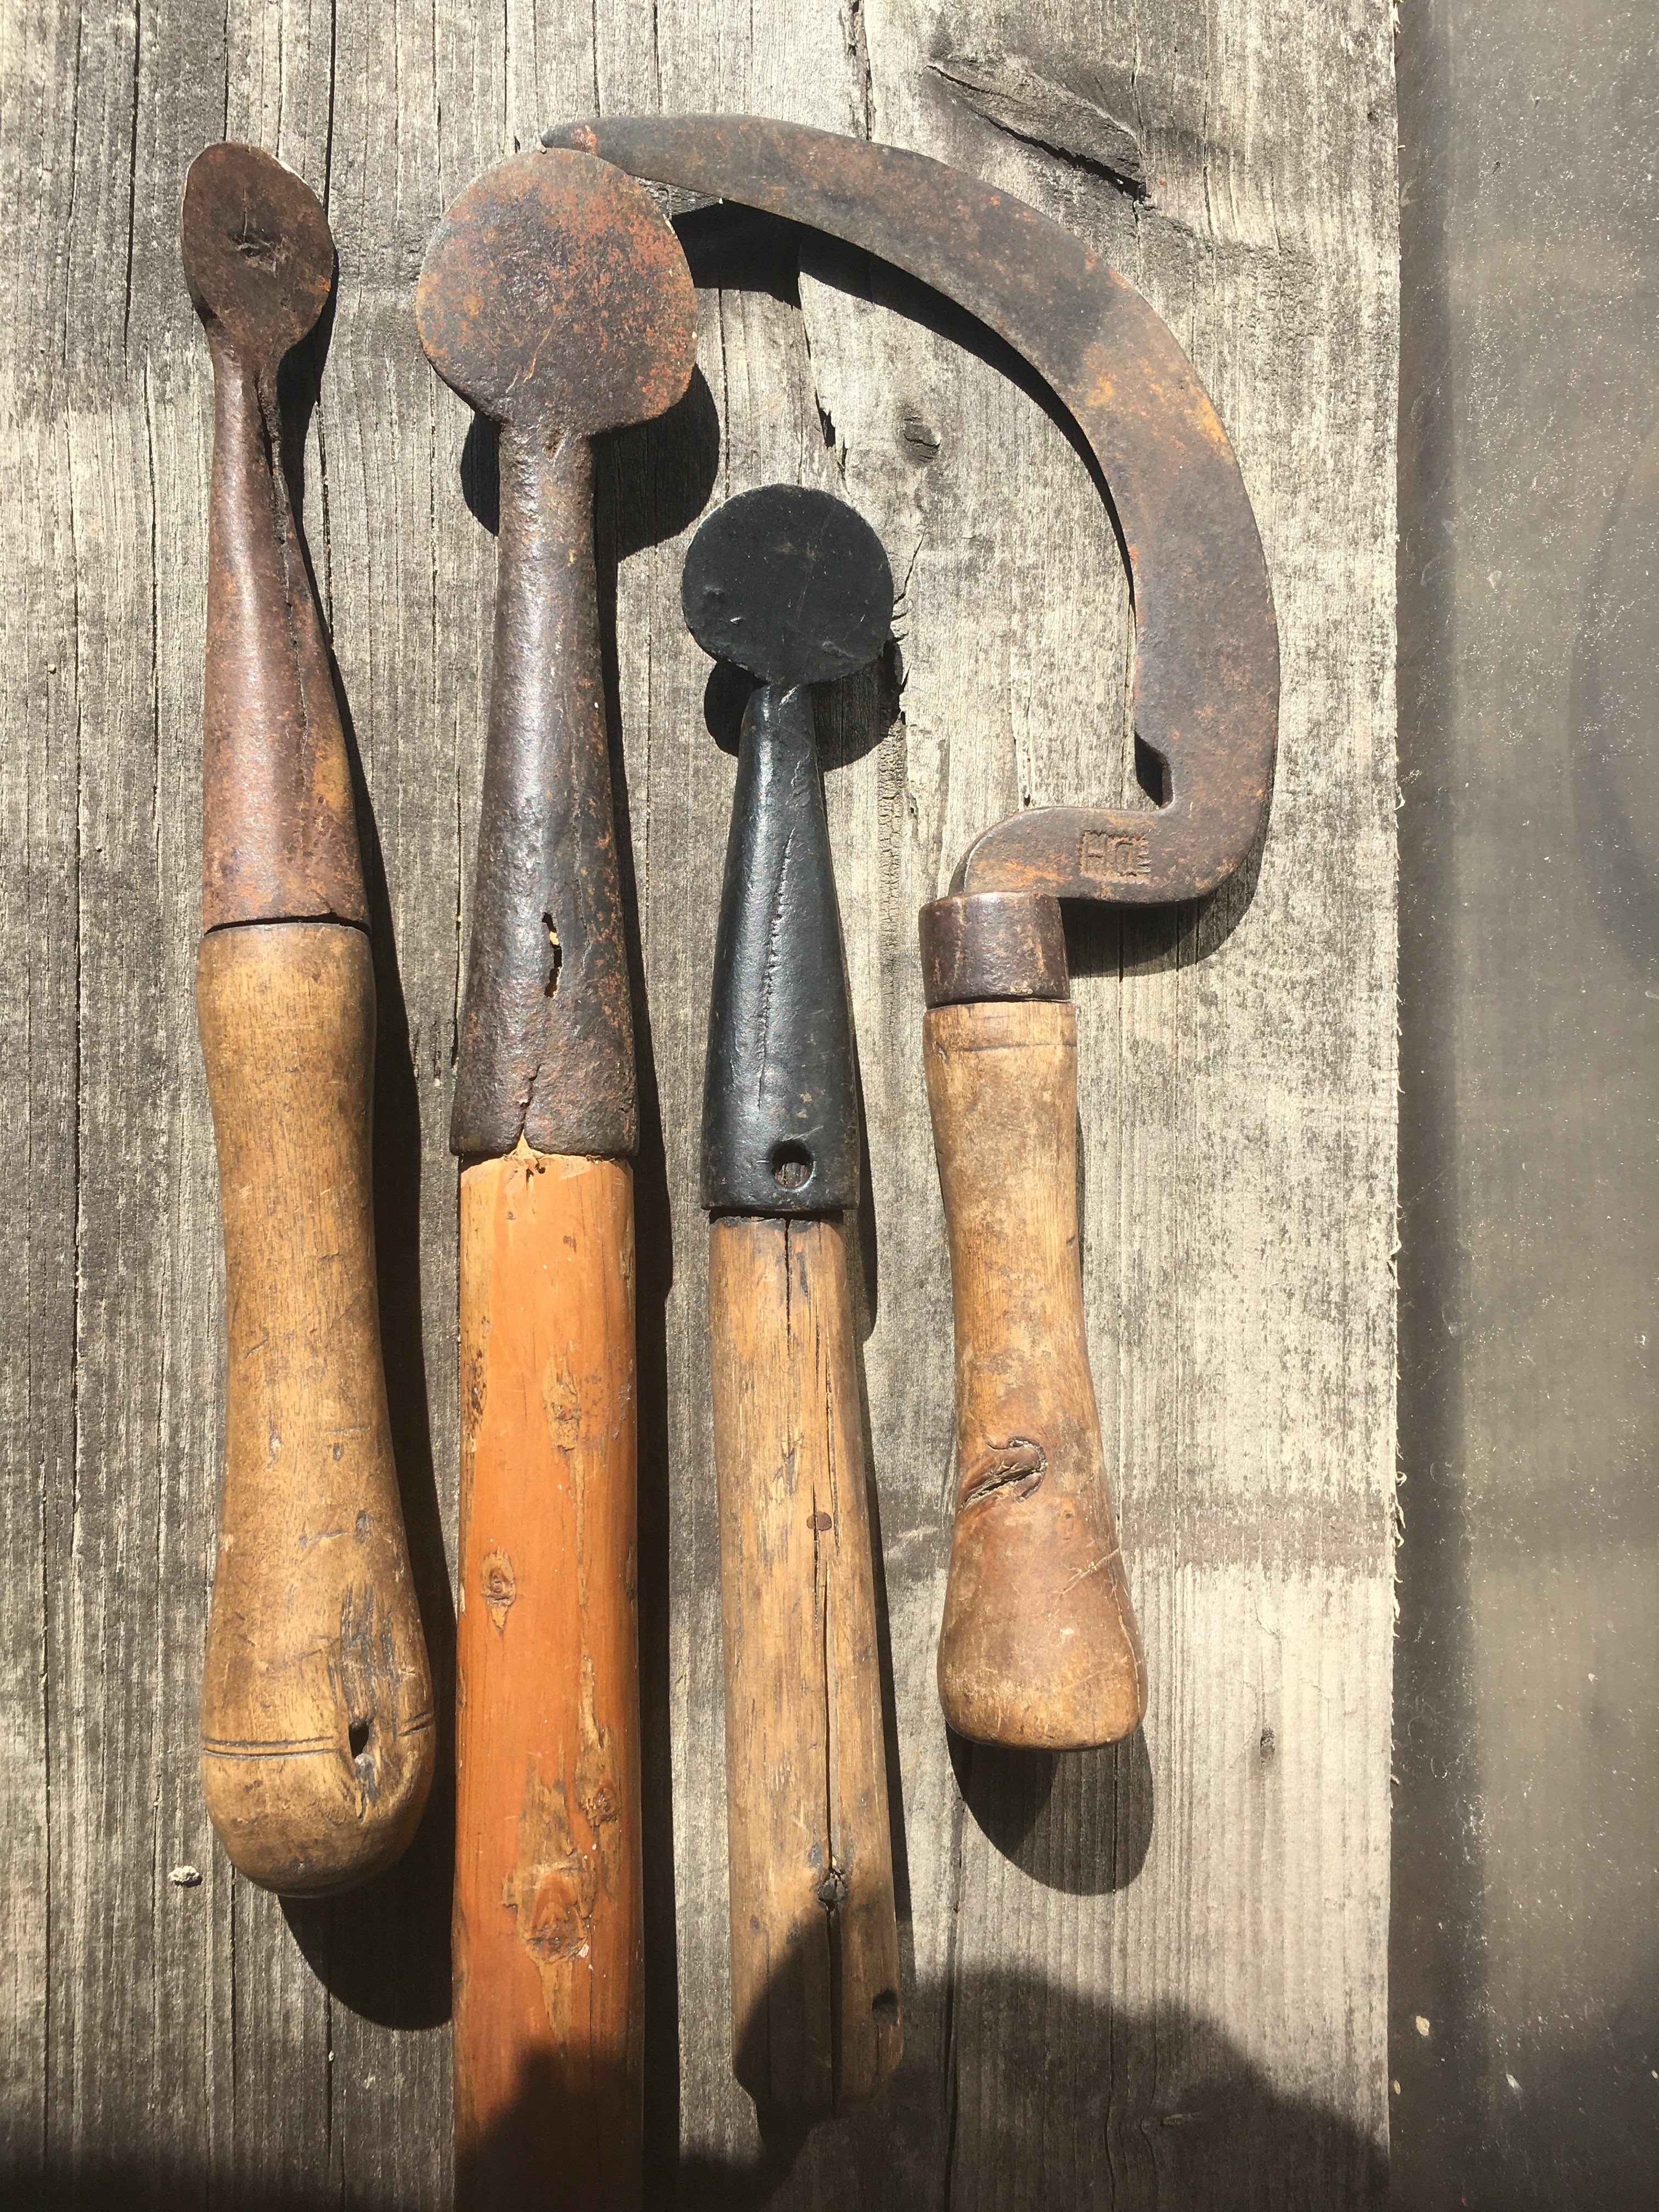 Schällöffel zum Loheschälen (3. Werkzeug von rechts) (Besucherbergwerk und Bergbaumuseum "Grube Silberhardt" CC BY-NC-SA)